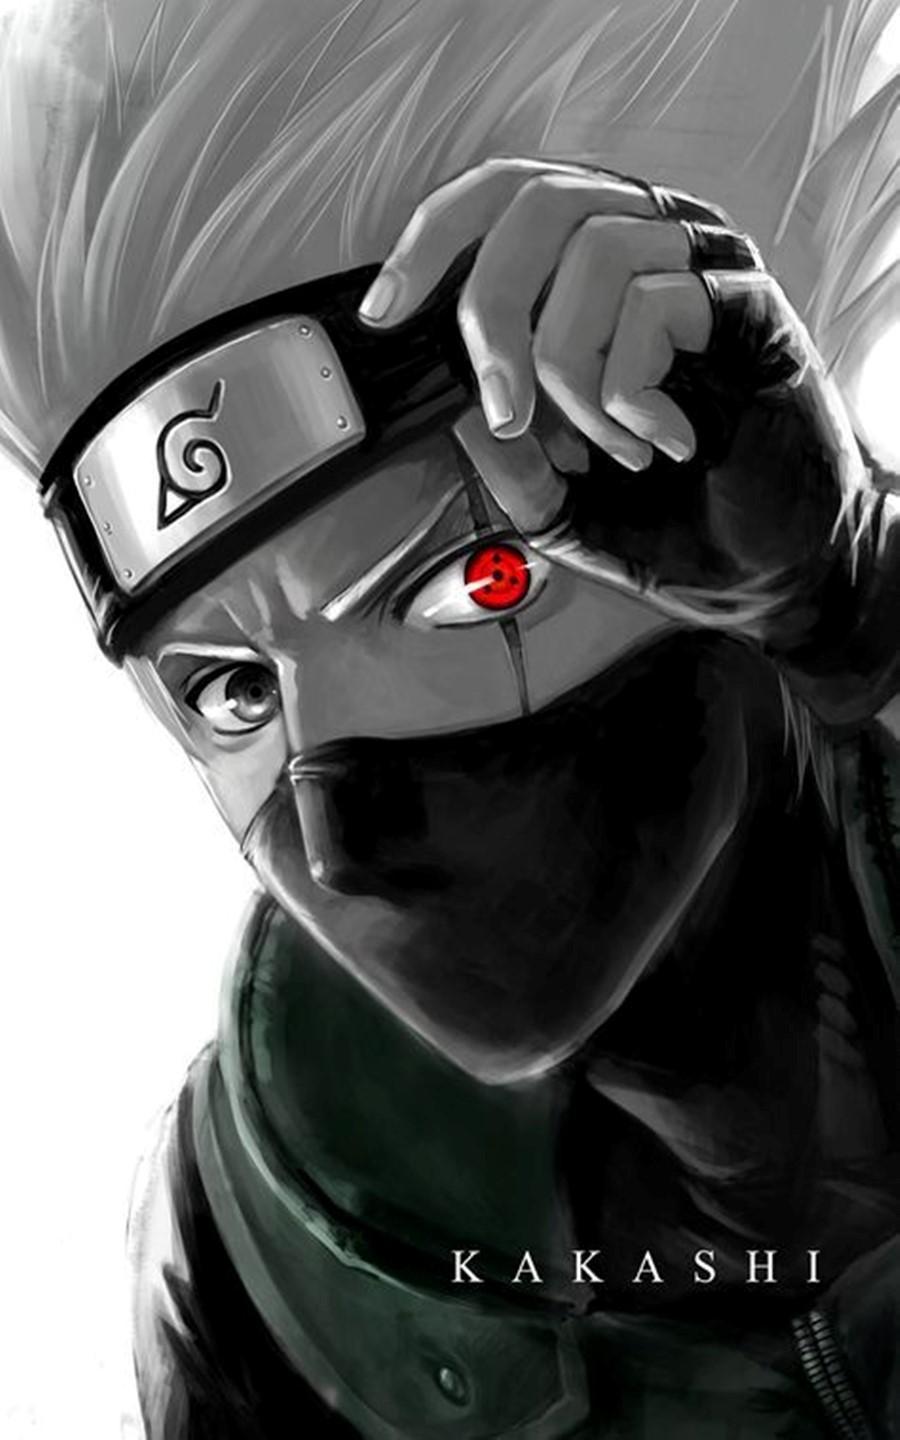 Tường nhân vật Kakashi sẽ đưa bạn vào thế giới của Naruto, nơi những ninja tài ba chiến đấu với những kẻ địch đáng sợ. Chiêm ngưỡng hình ảnh Kakashi trên tường và cảm nhận sức mạnh của anh ta.